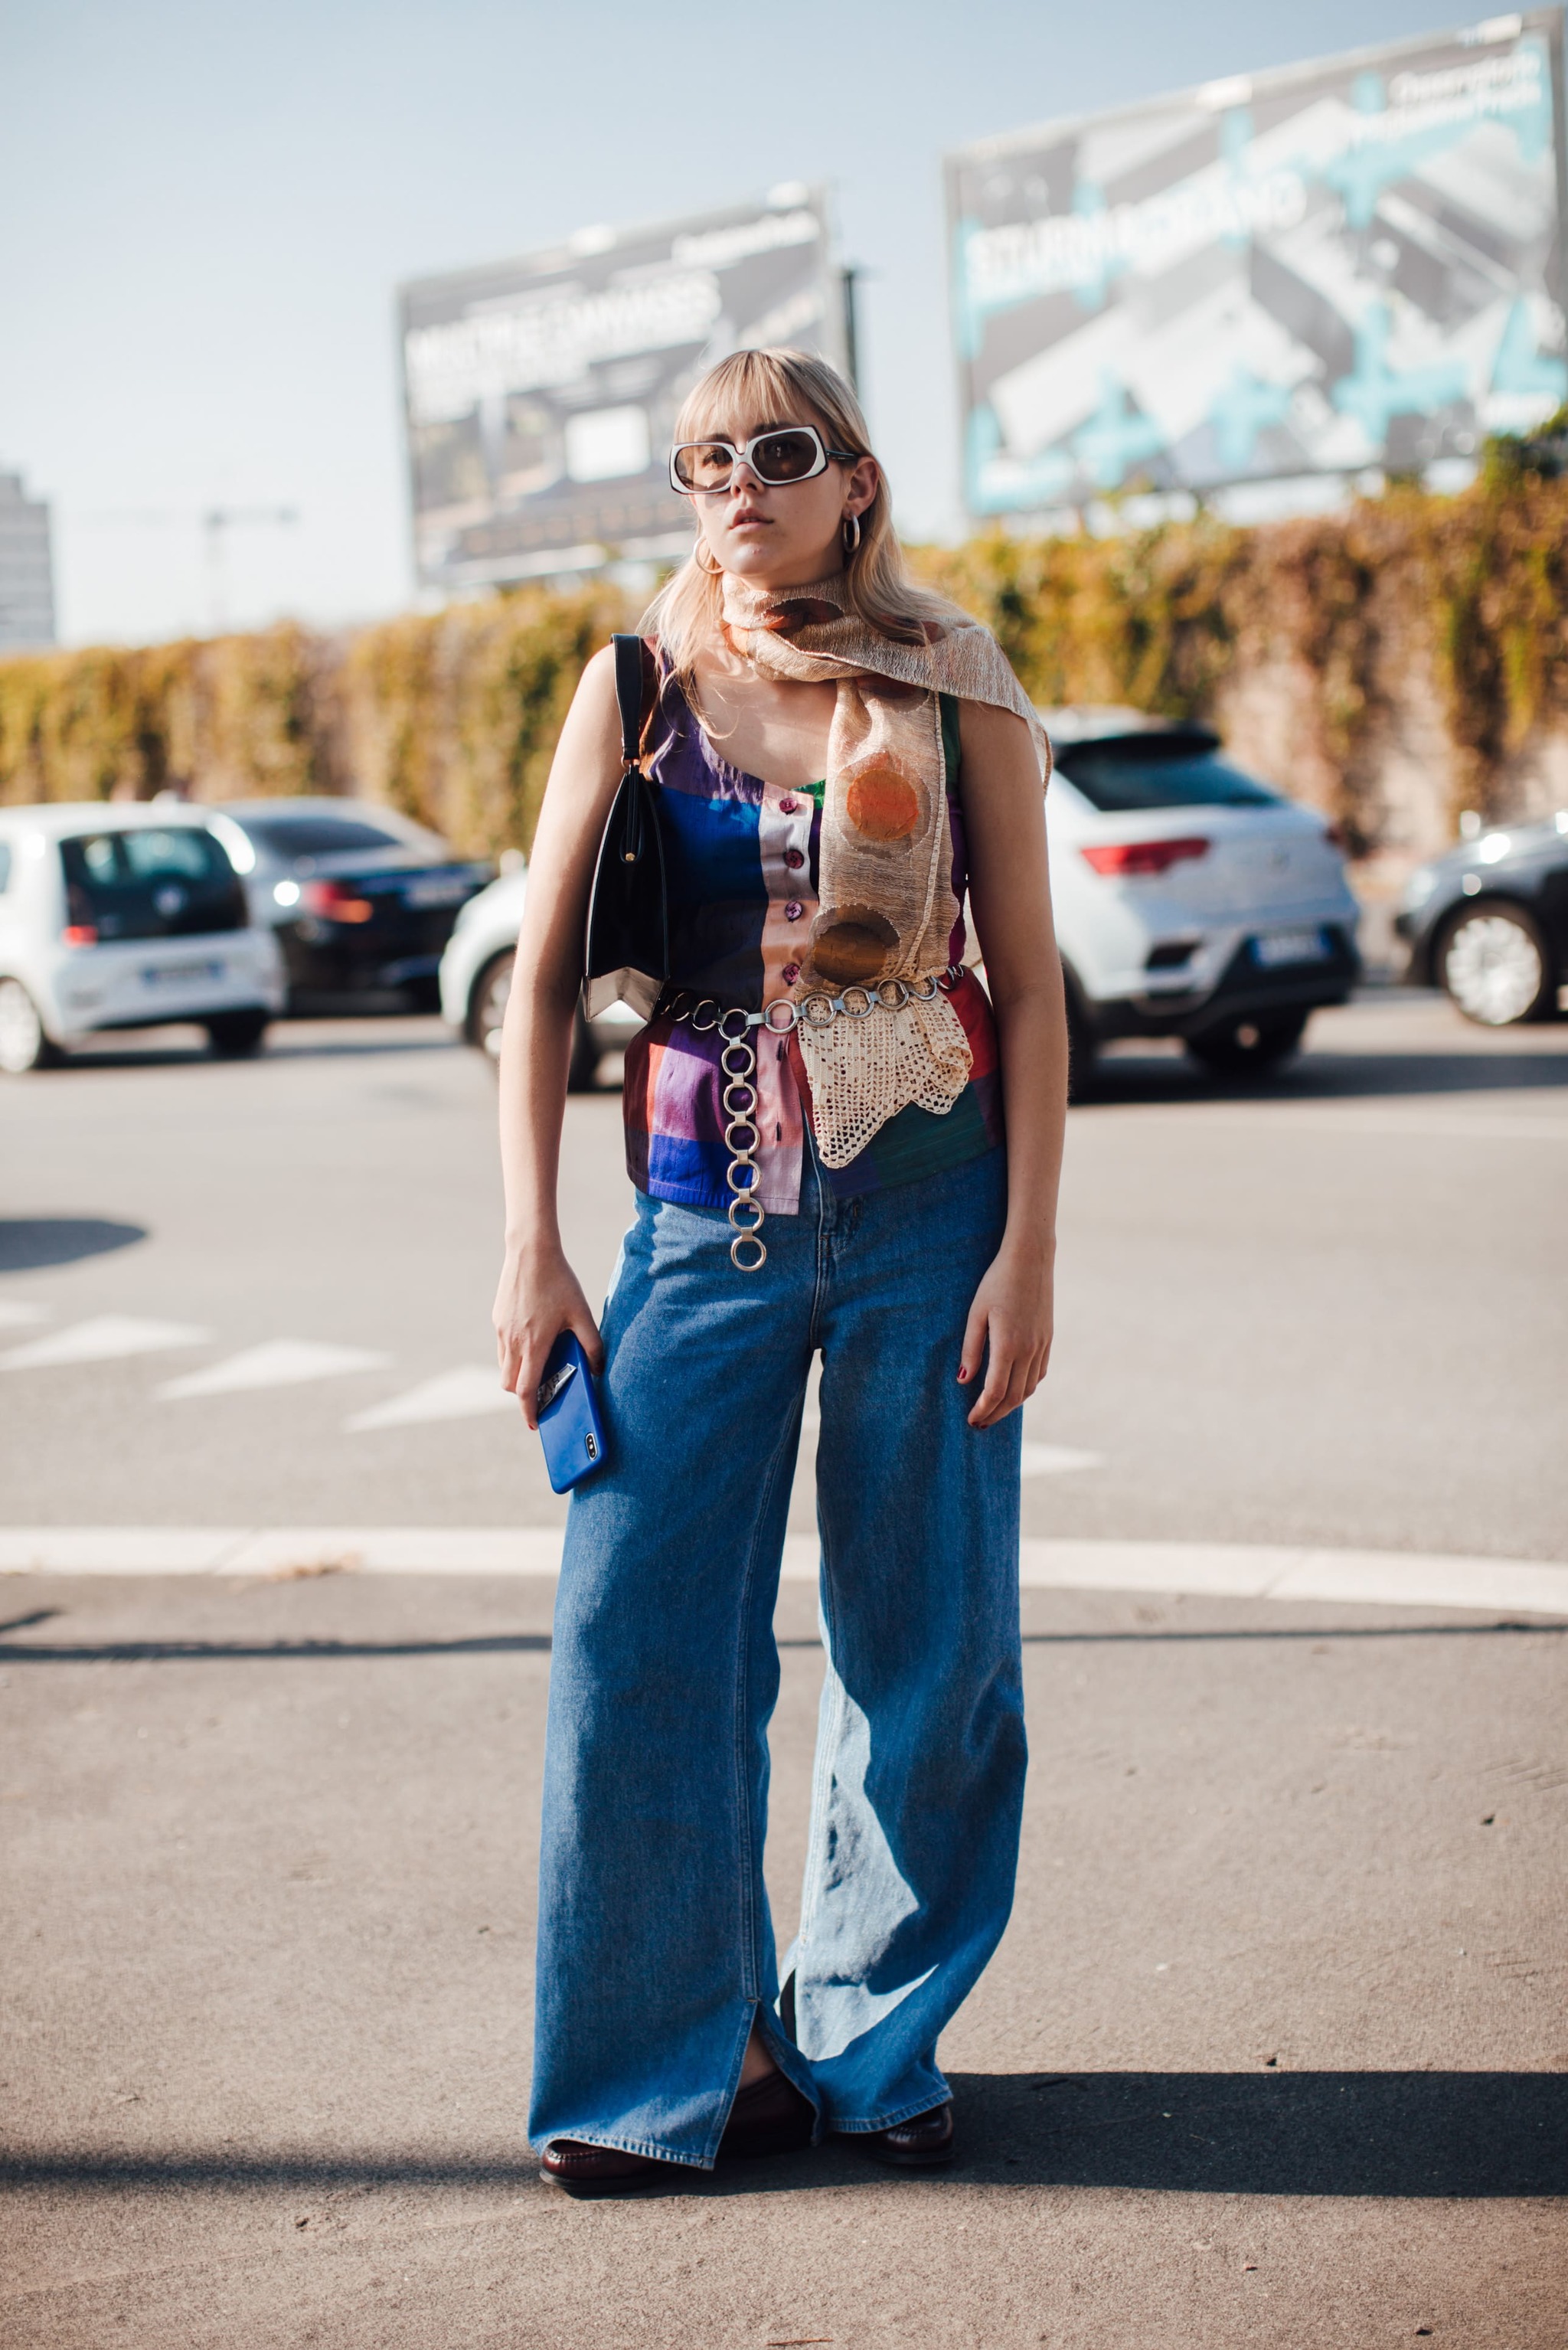 Outfit 'boho' visto en la Semana de la Moda de Milán P/V.